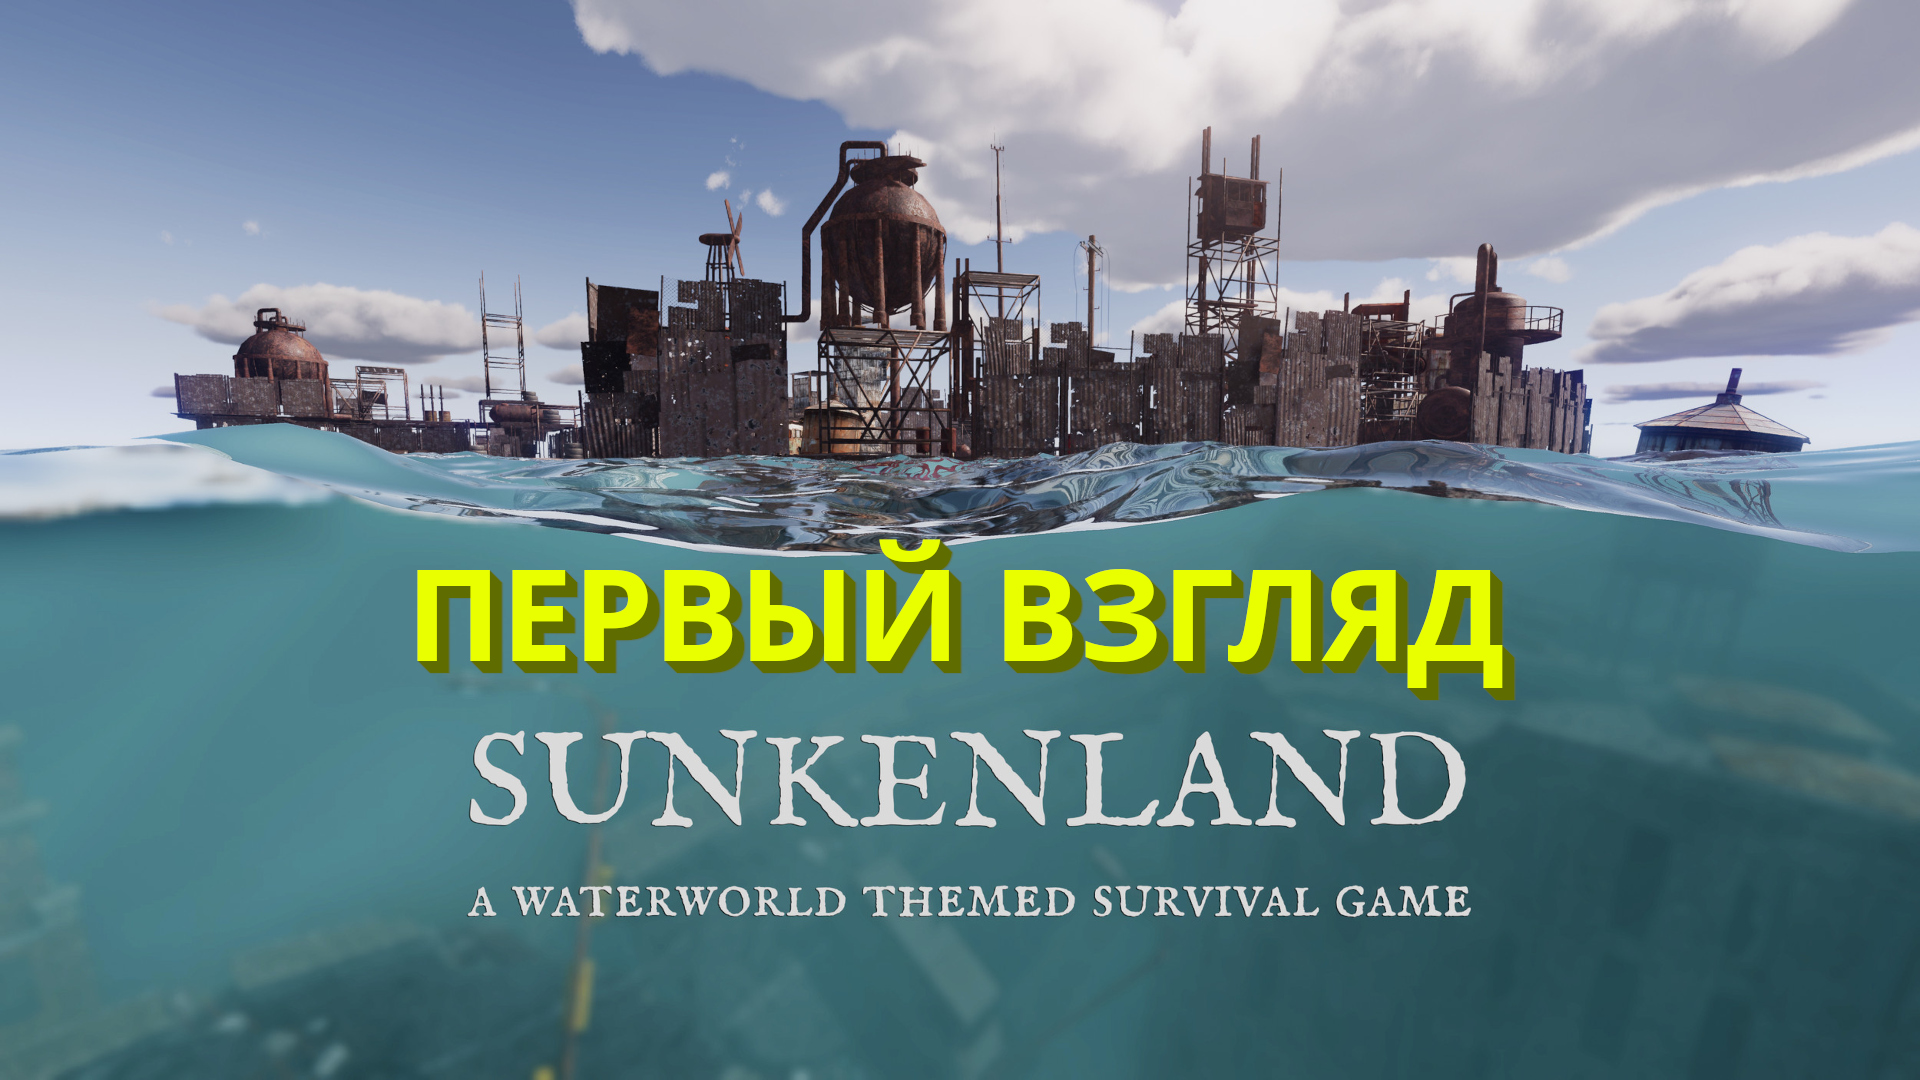 Sunkenland | Новая выживалка вышла! | Первый взгляд #1